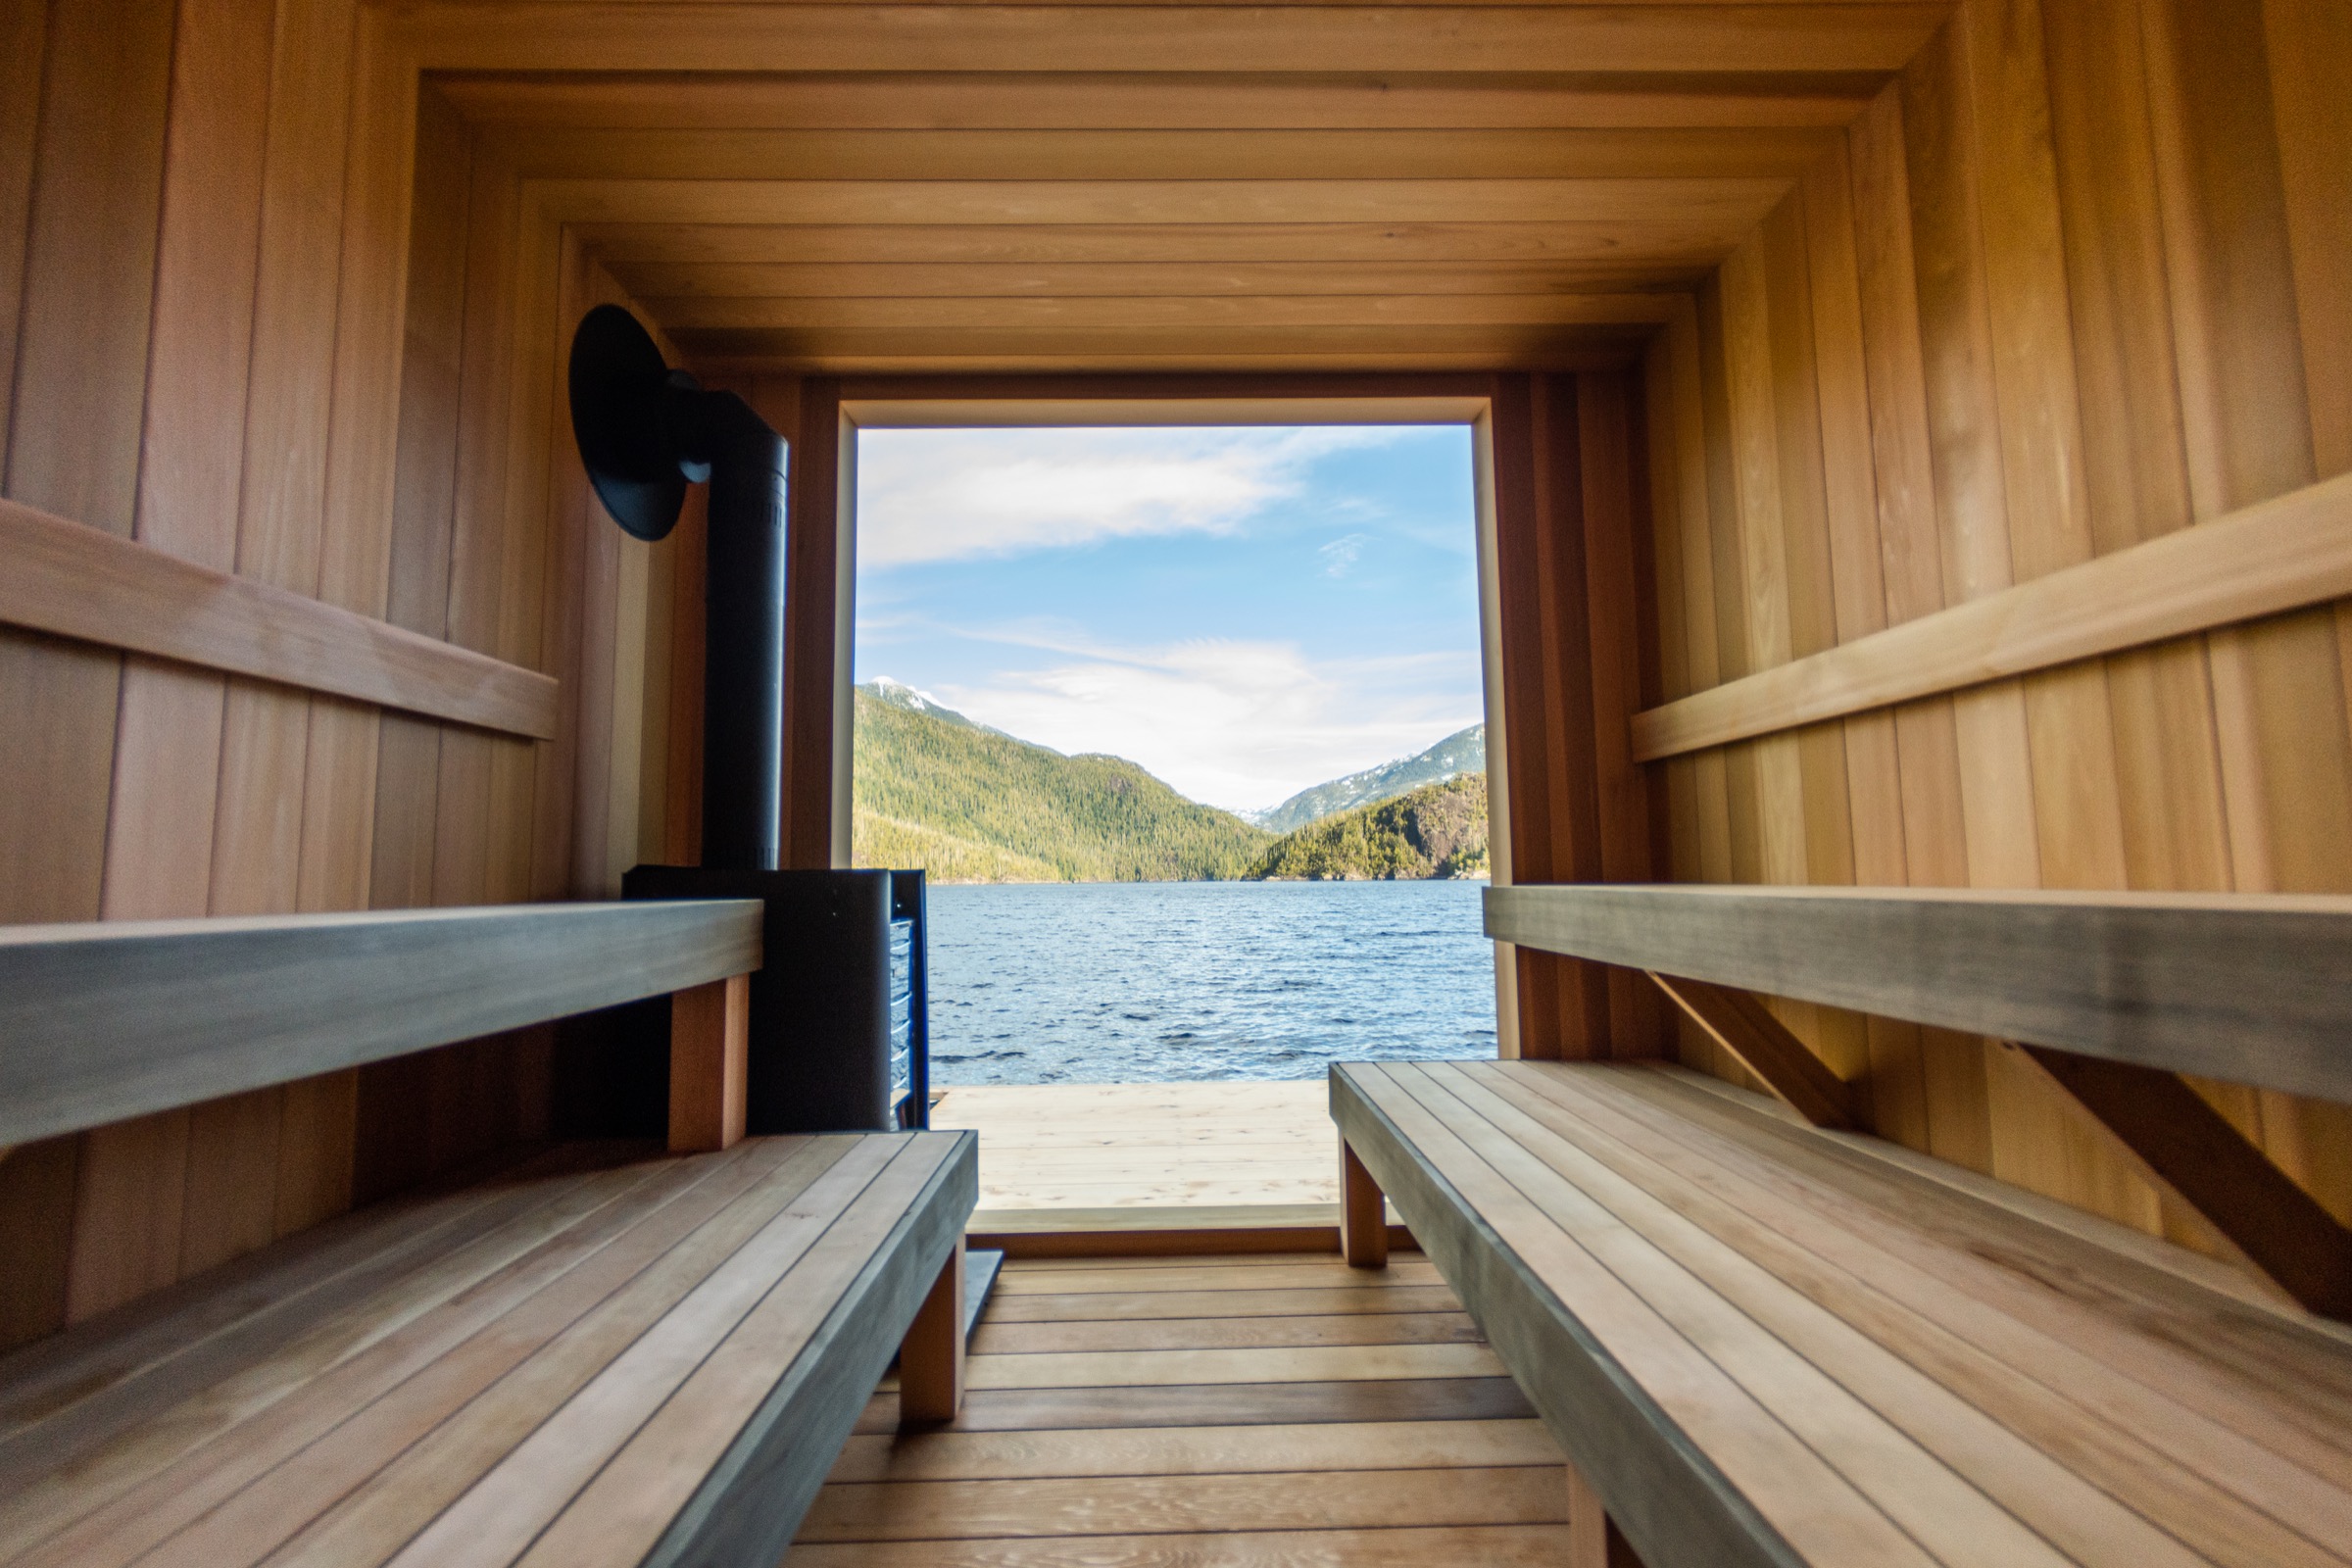 The floating sauna at Tofino Resort + Marina in Tofino, British Columbia. (Jill Salter)